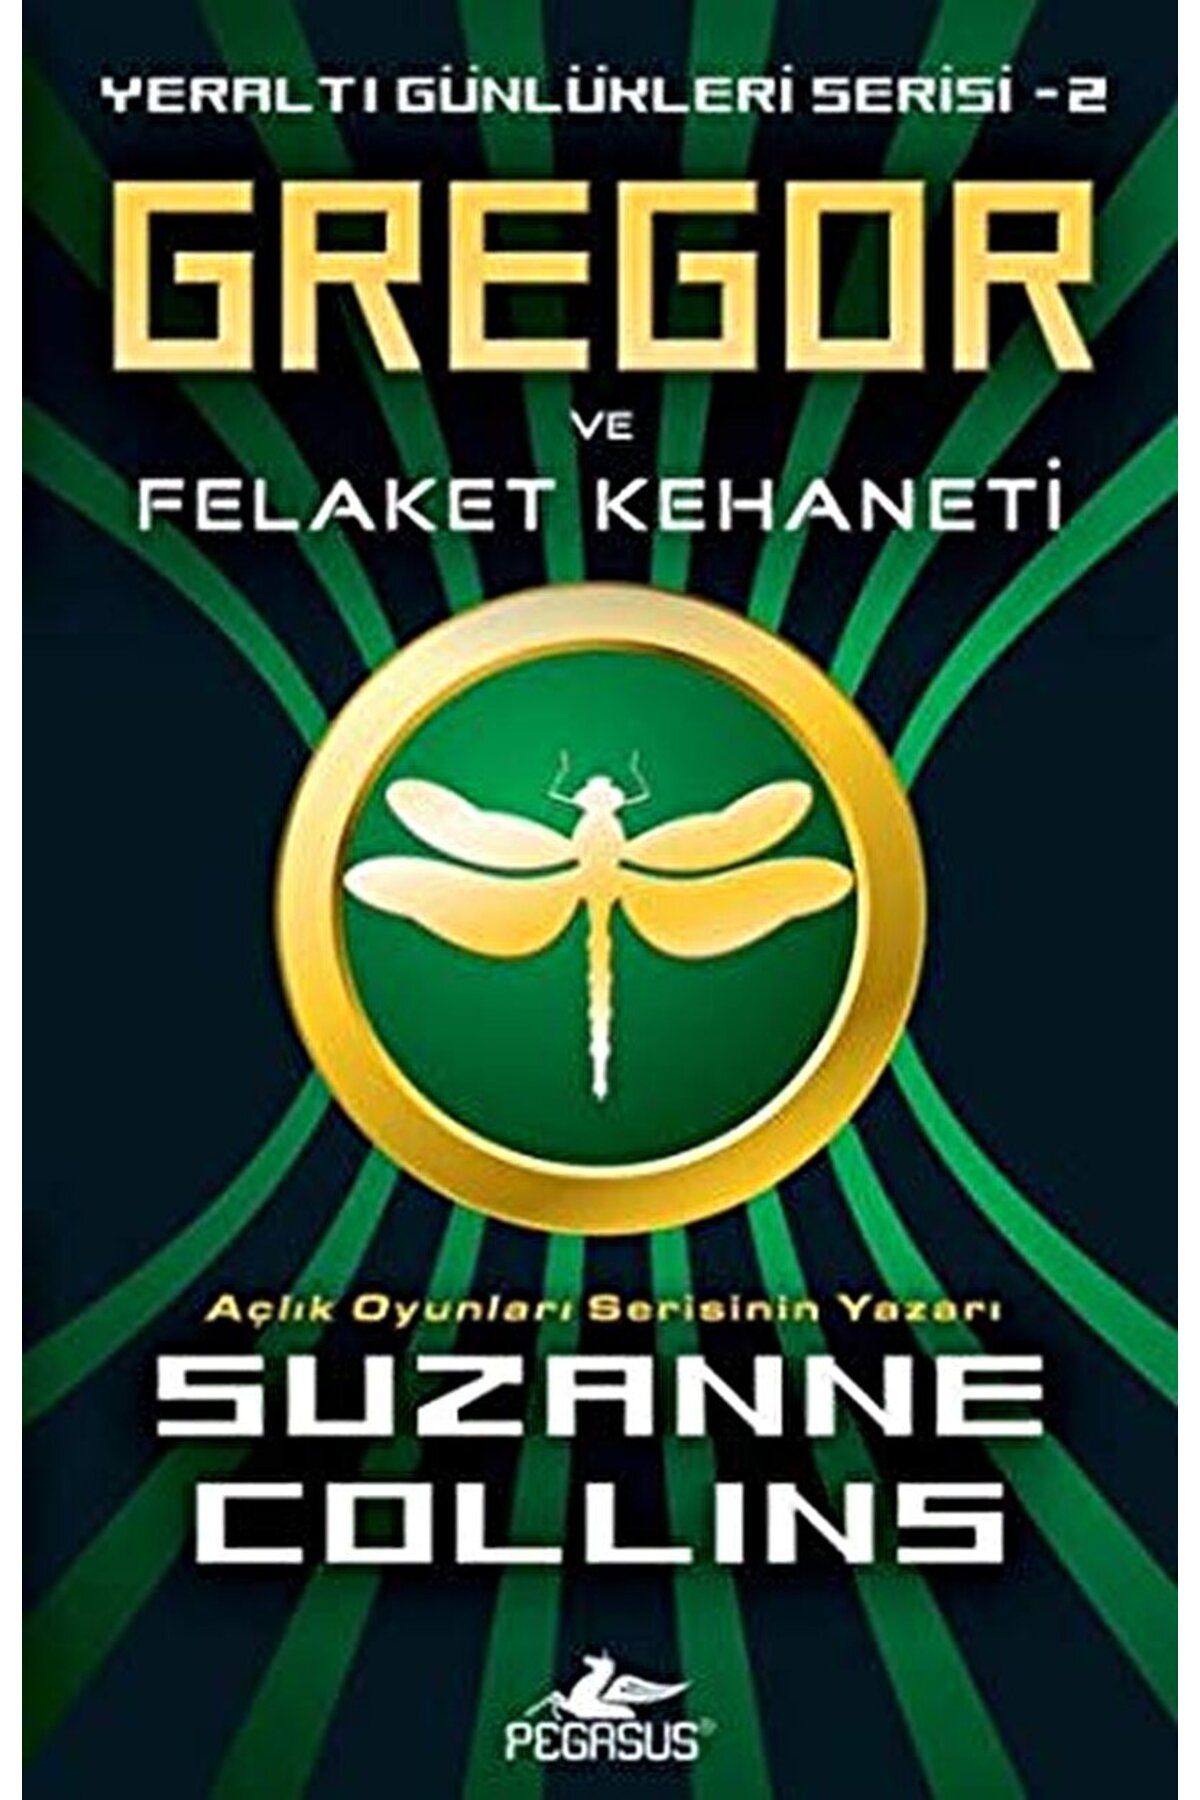 Pegasus Yayınları Gregor ve Felaket Kehaneti / Suzanne Collins / Pegasus Yayınları / 9786054456109